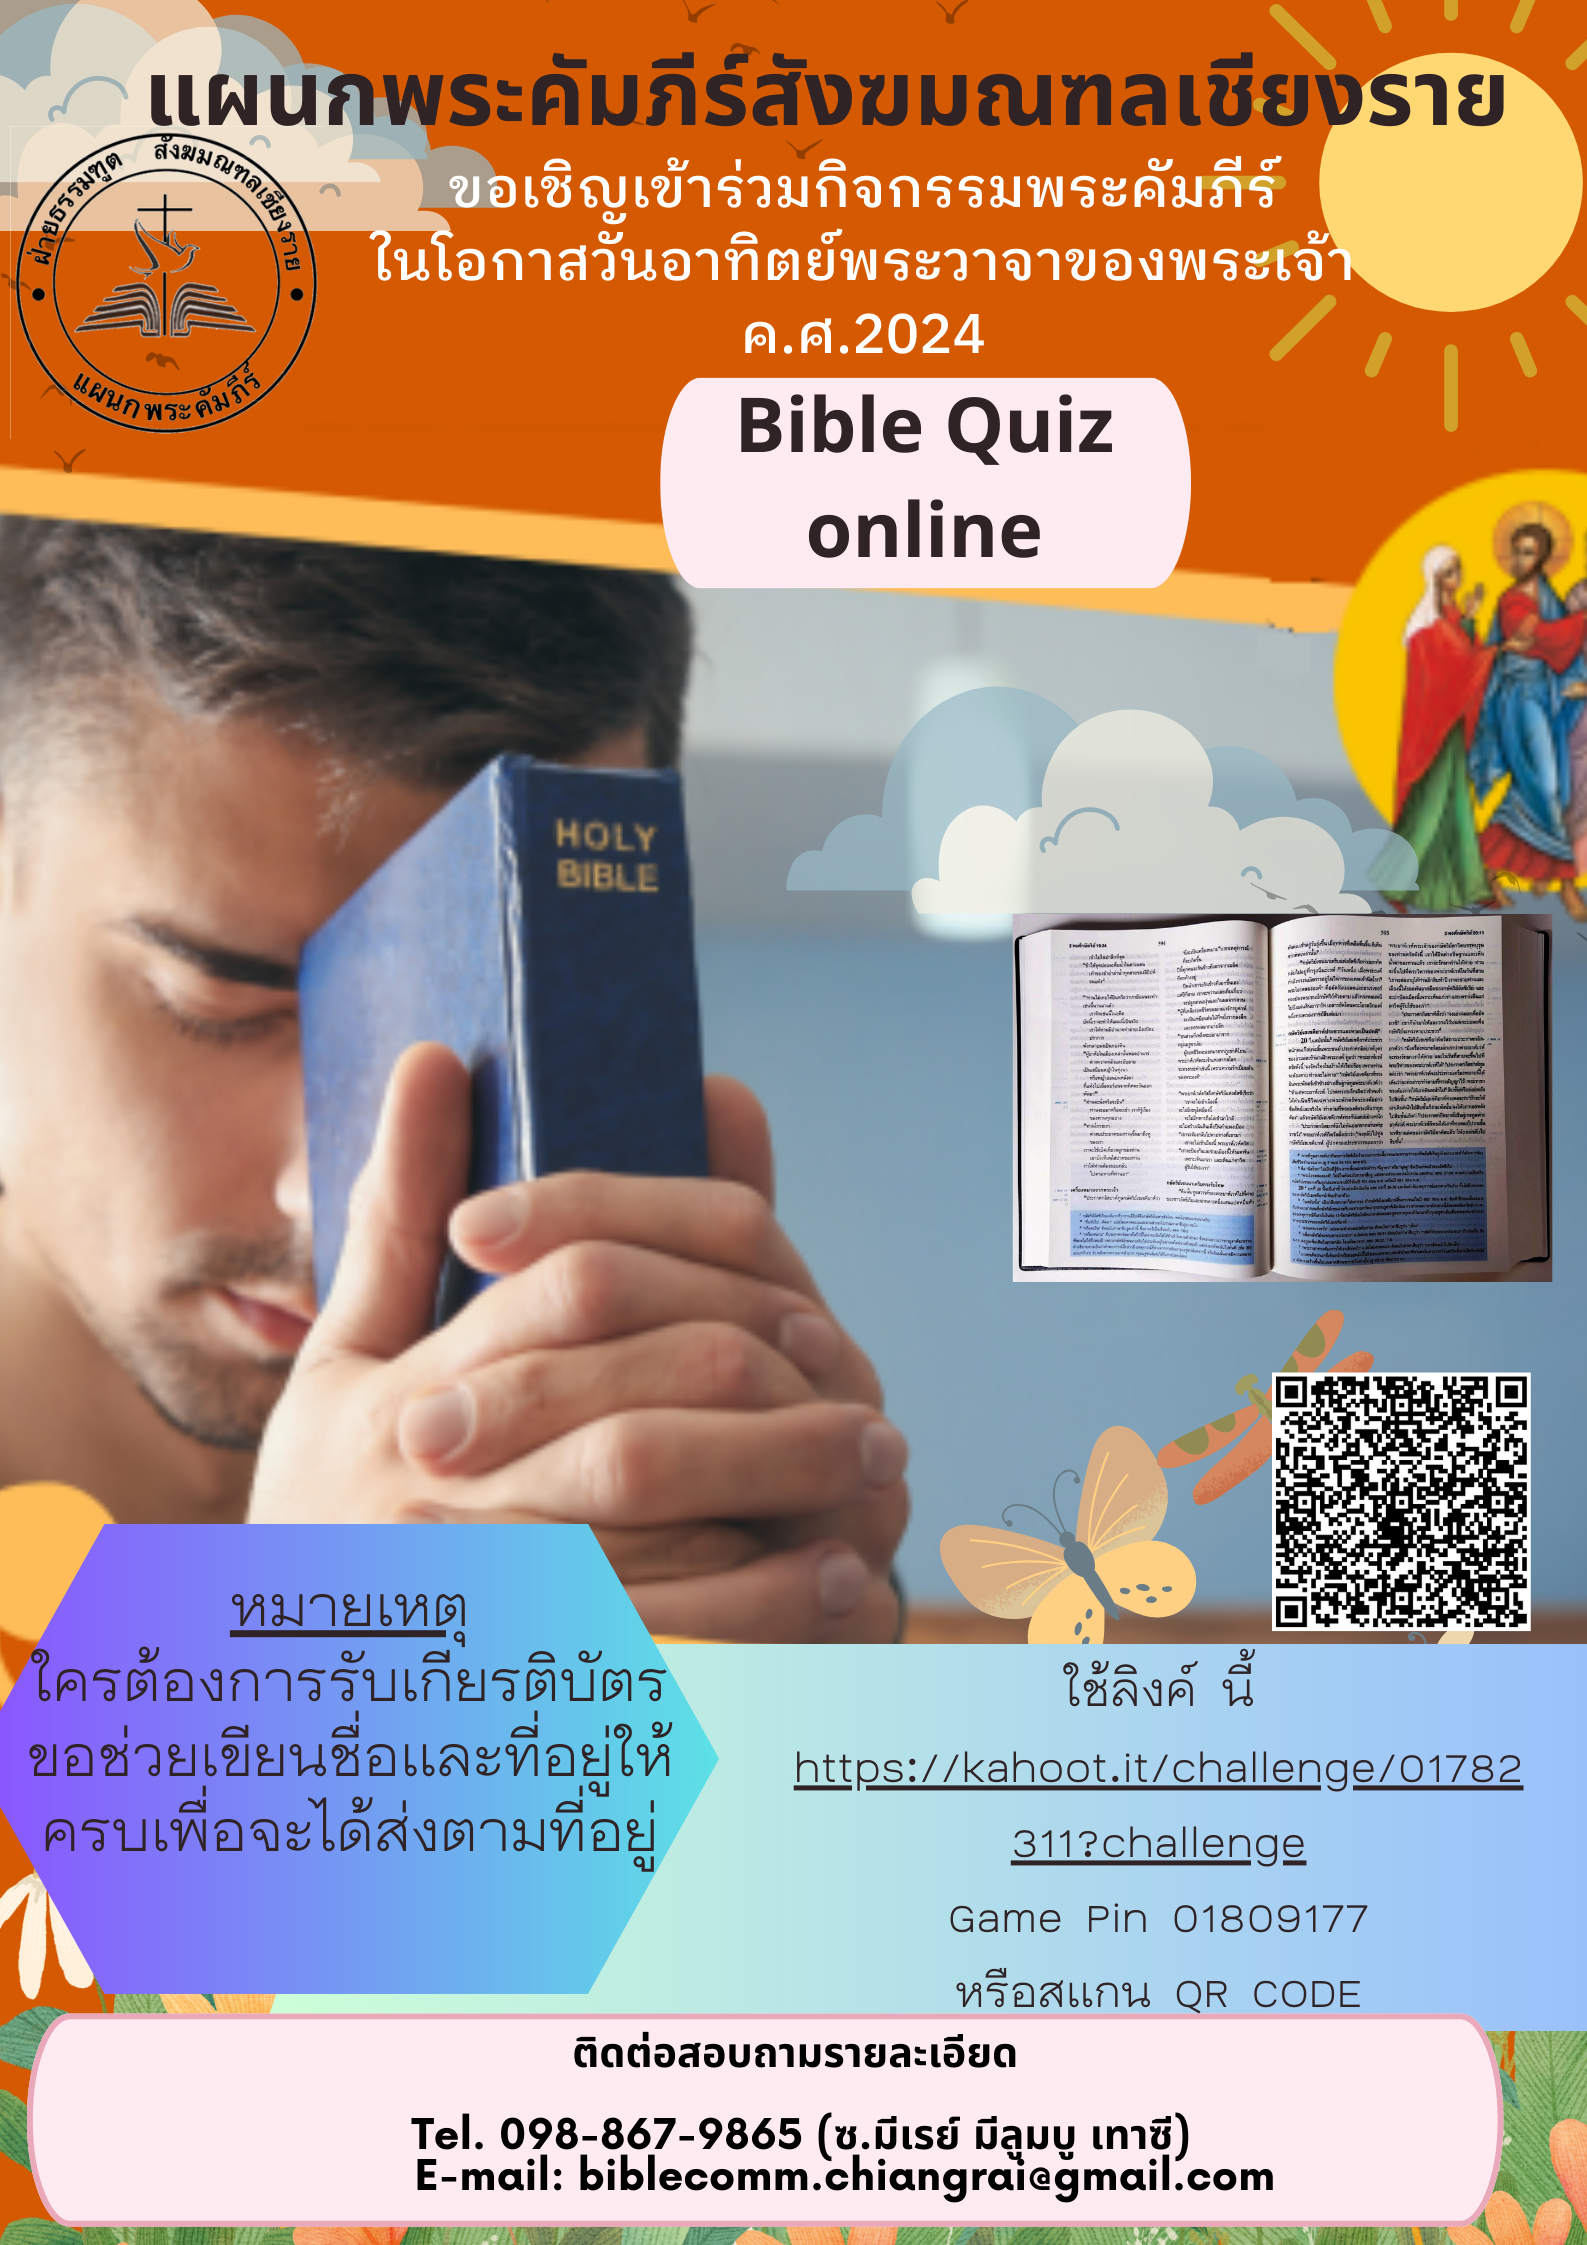 แผนกพระคัมภีร์สังฆมณฑลเชียงราย ขอเชิญเข้าร่วมกิจกรรมพระคัมภีร์ ในโอกาสวันอาทิตย์พระวาจาของพระเจ้า ค.ศ. 2024 "Bible Quiz online"